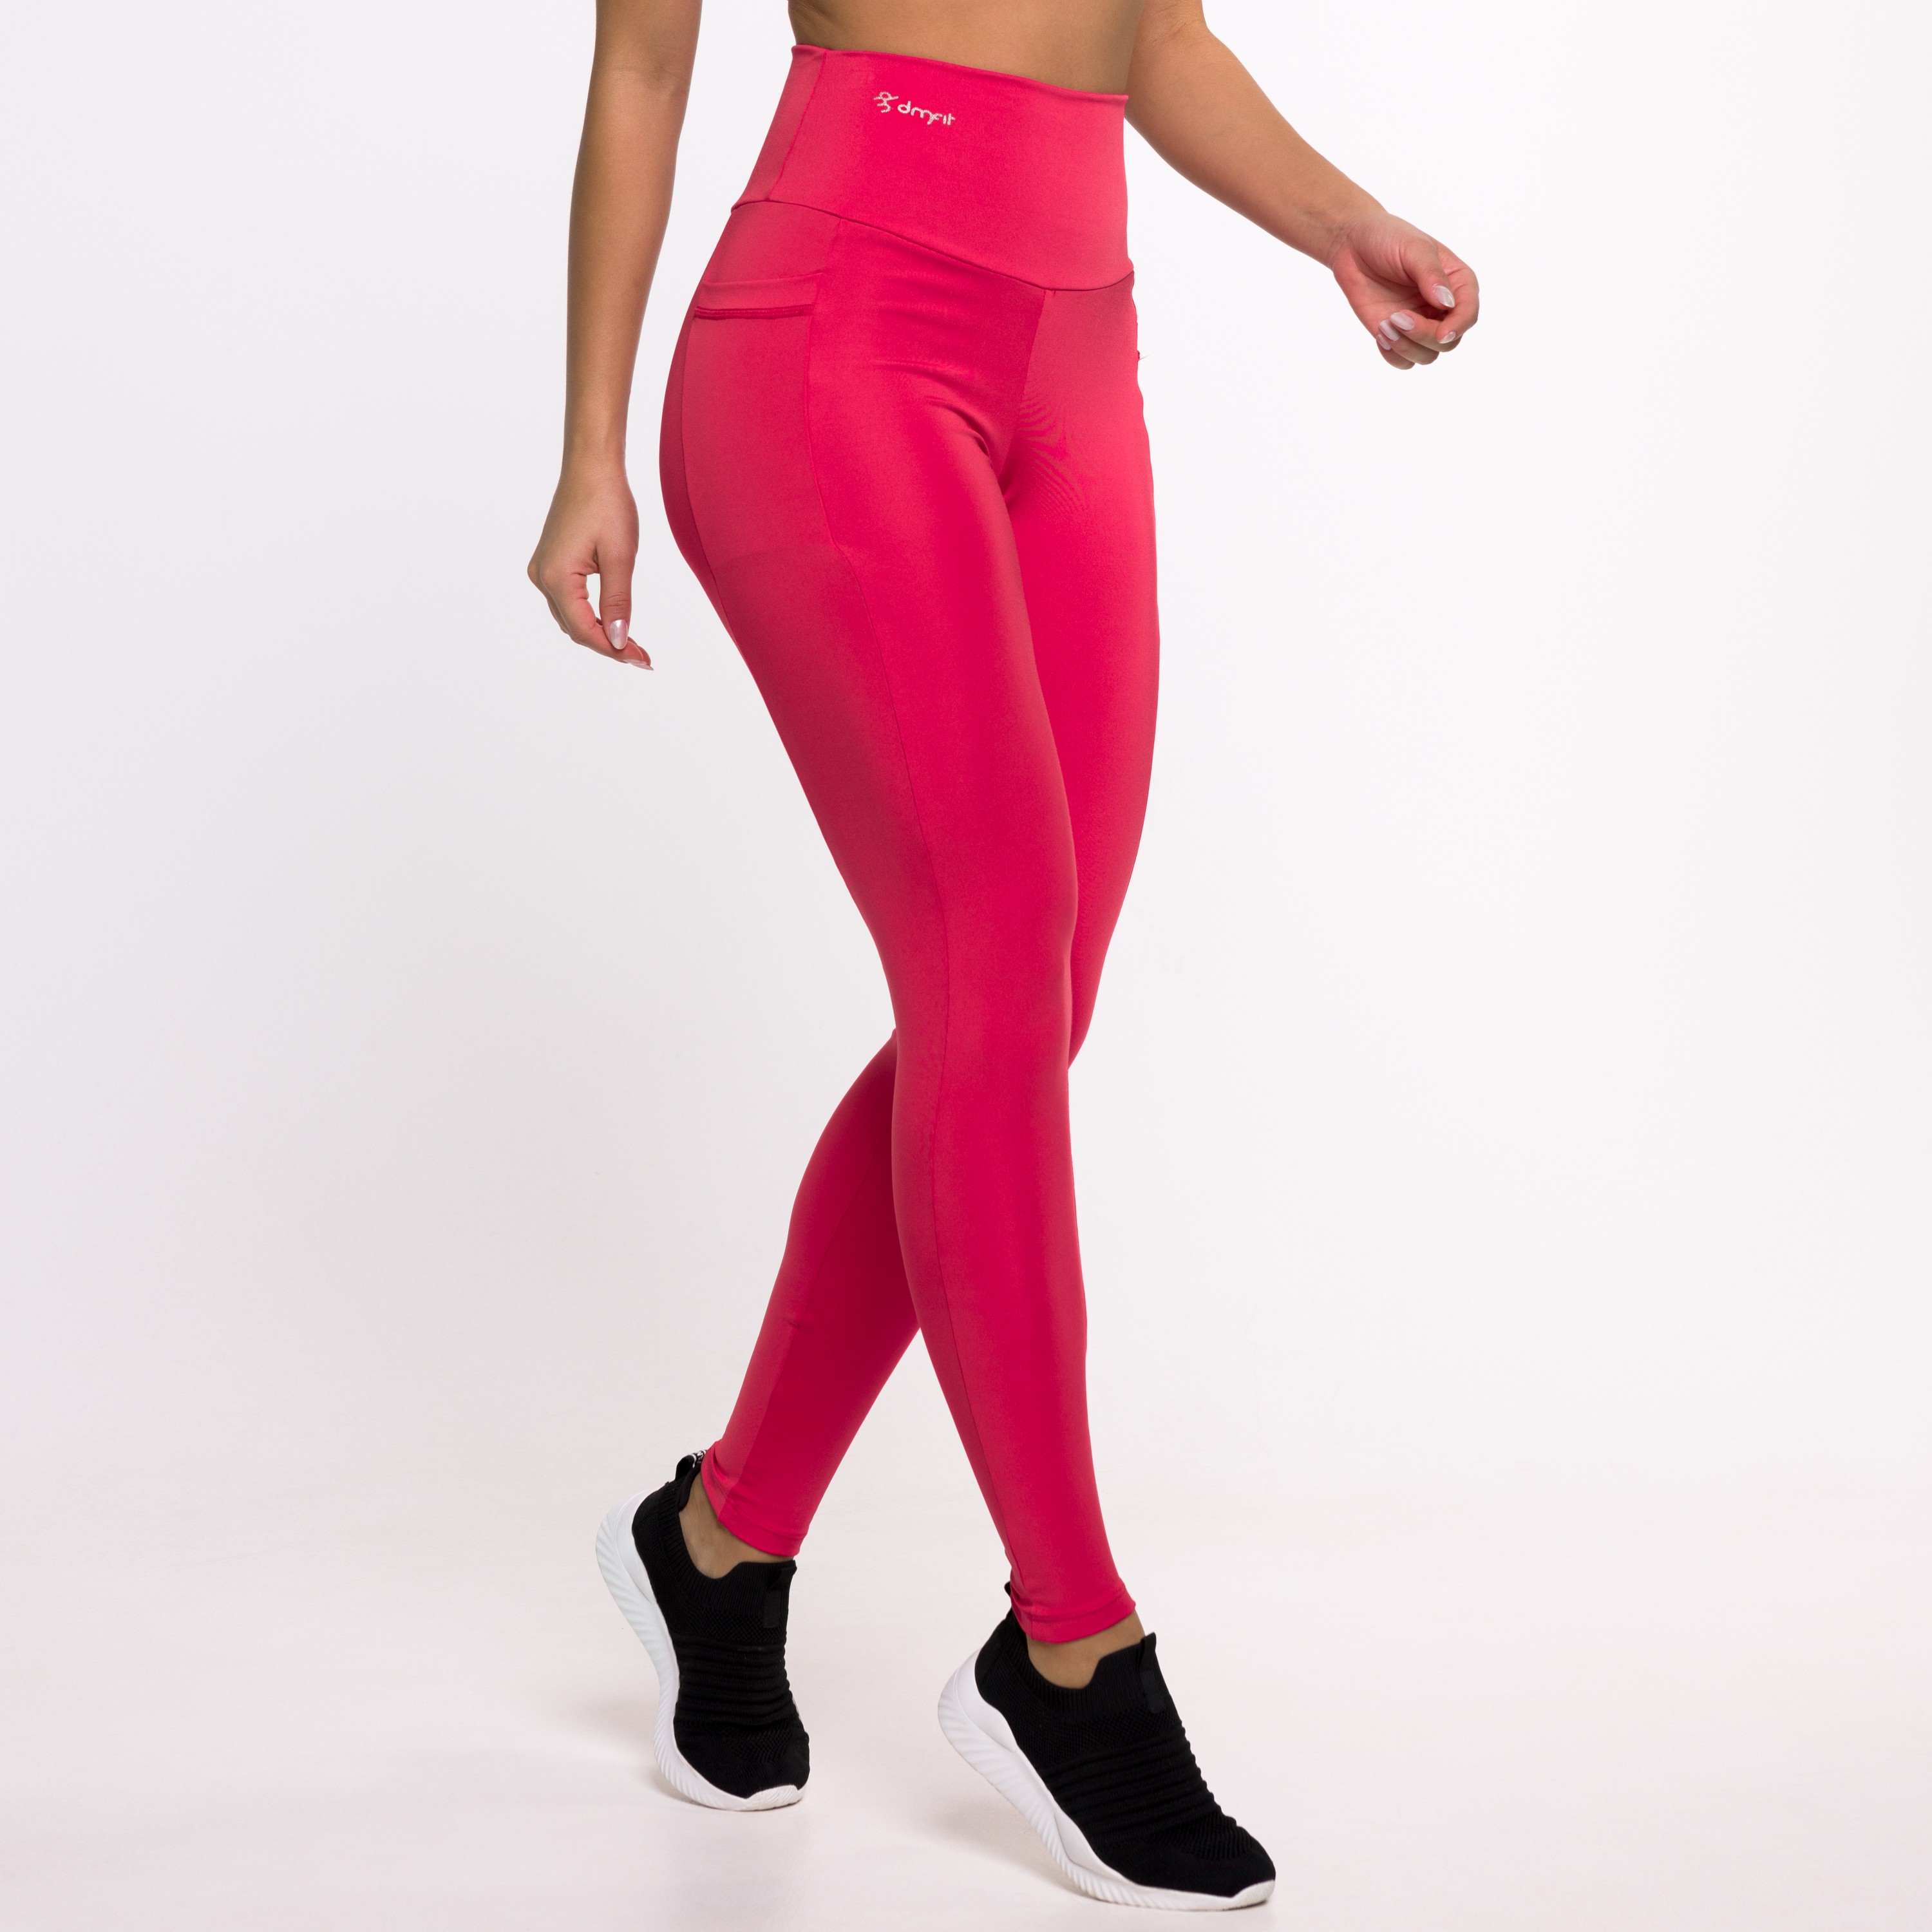 Legging Gabi Lingerie Fitness Calça Cintura Alta Treino Preta Com Pink -  Compre Agora